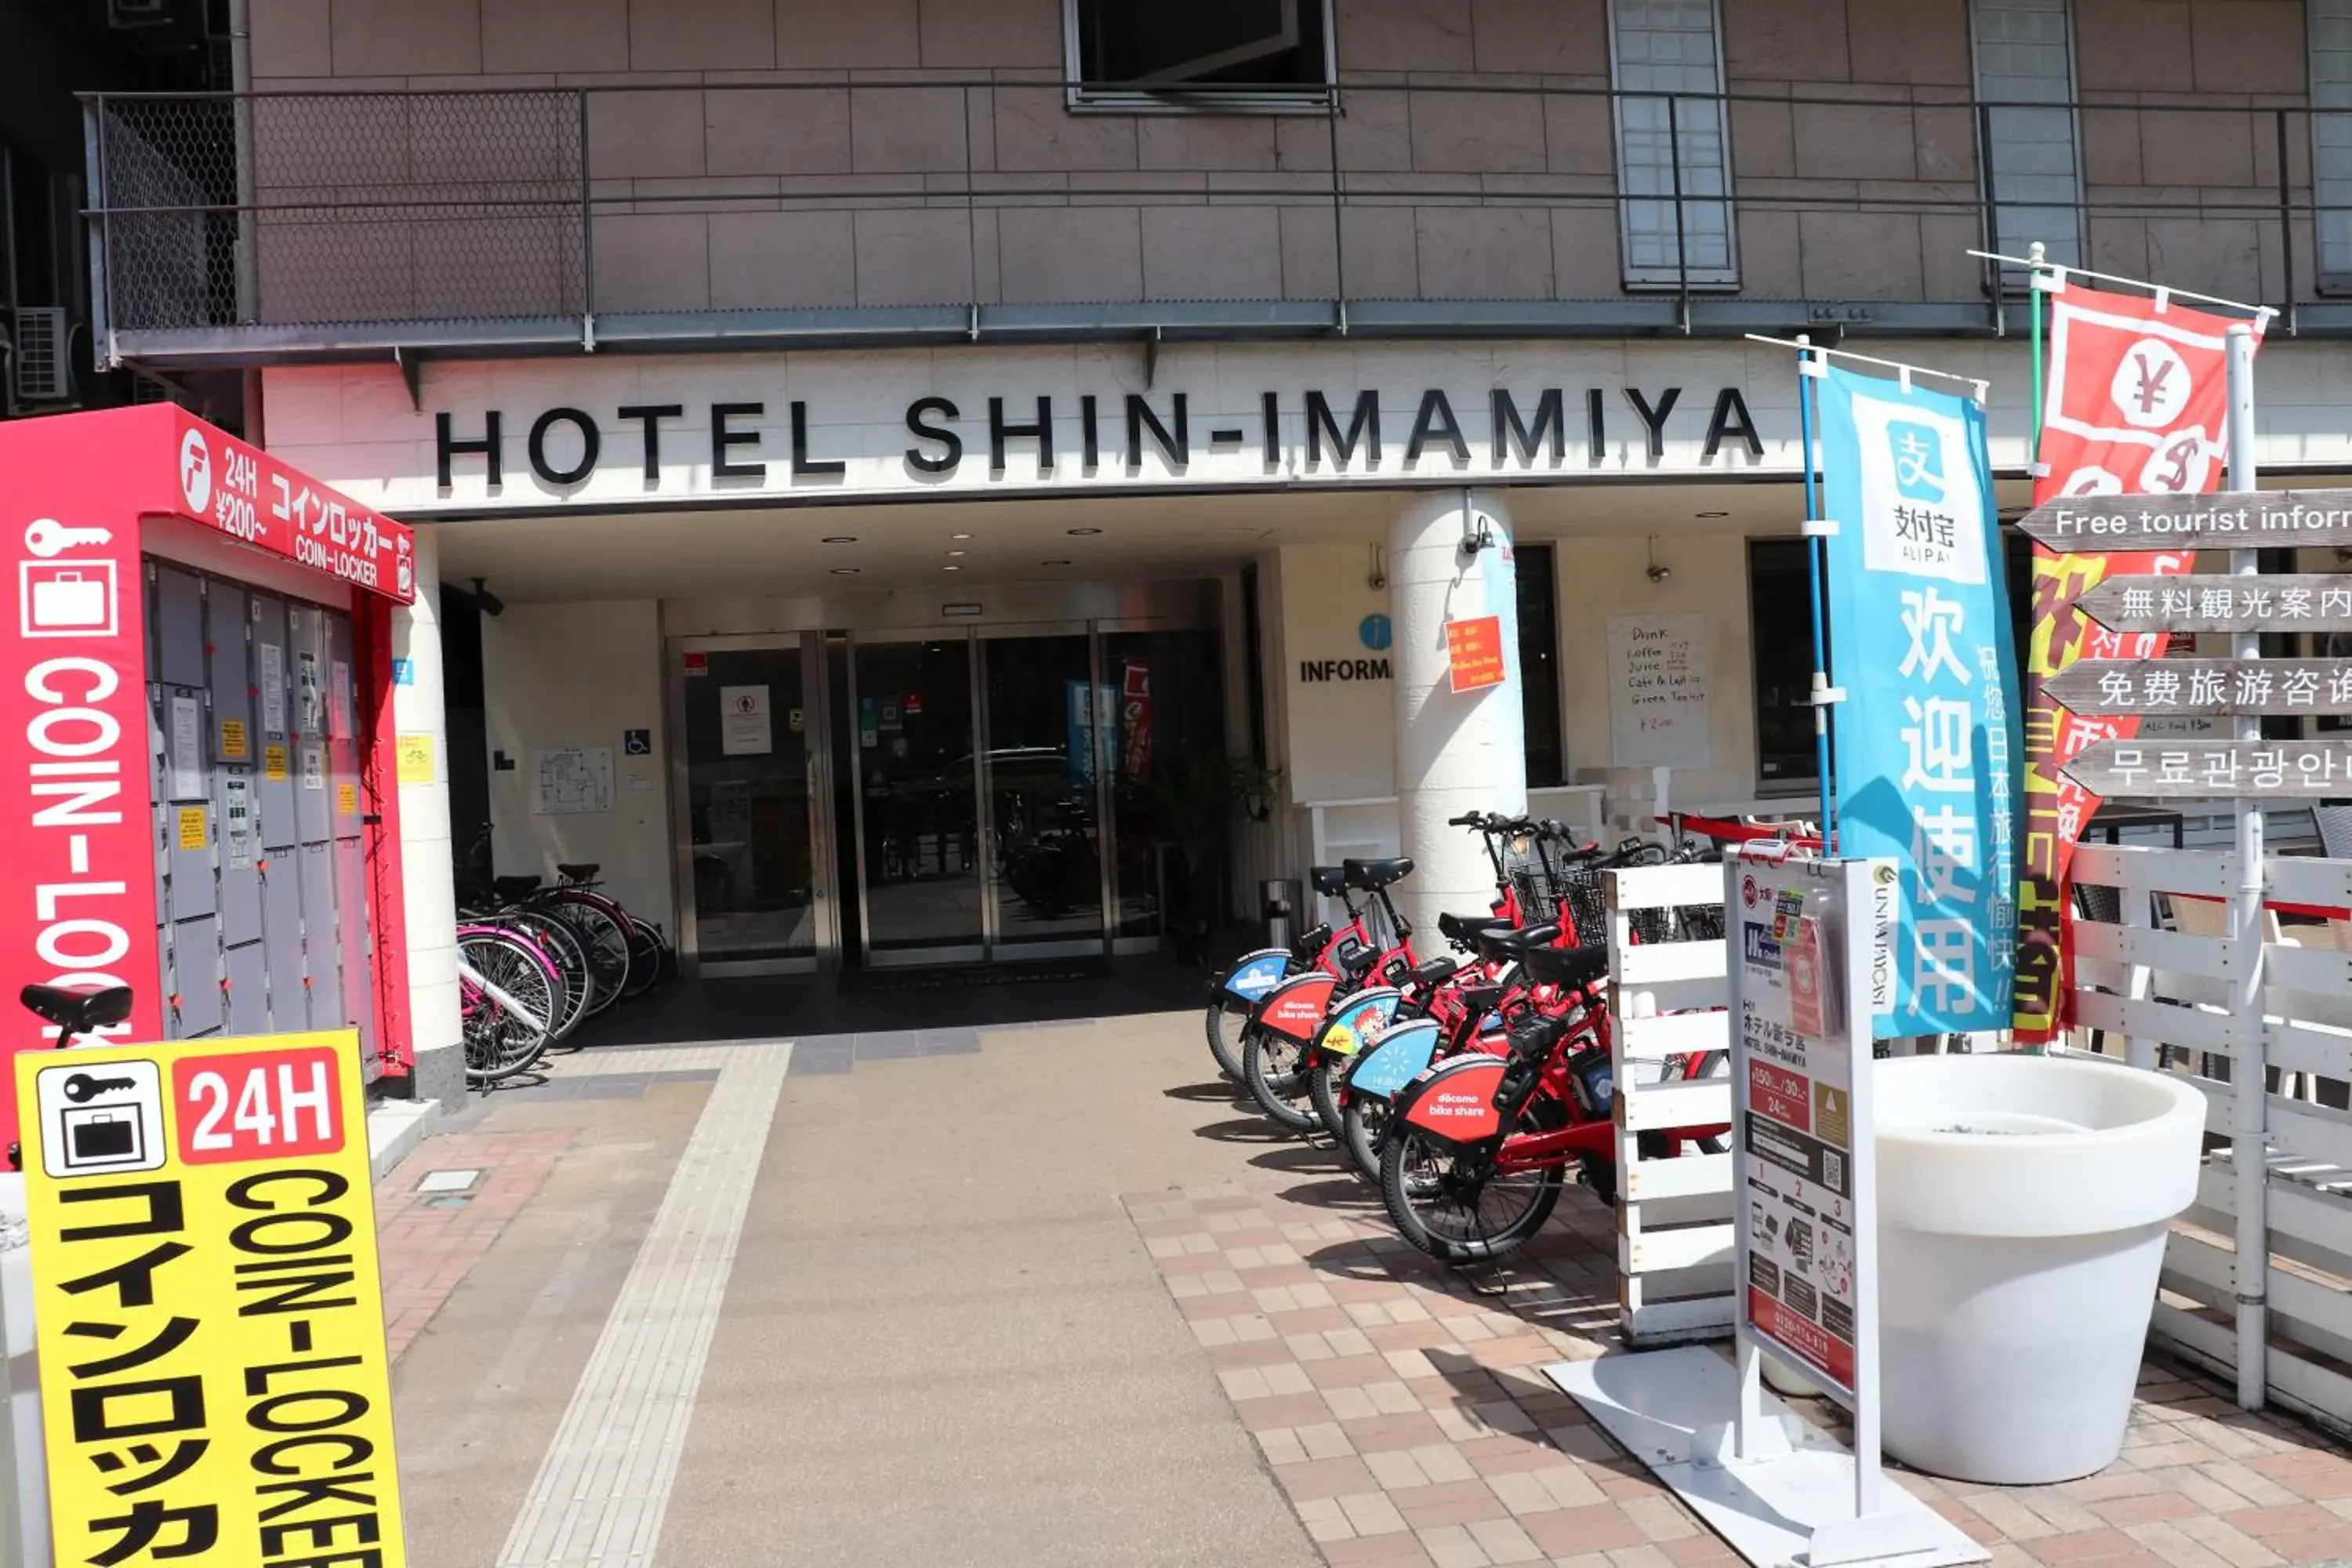 Facade/entrance in Hotel Shin Imamiya